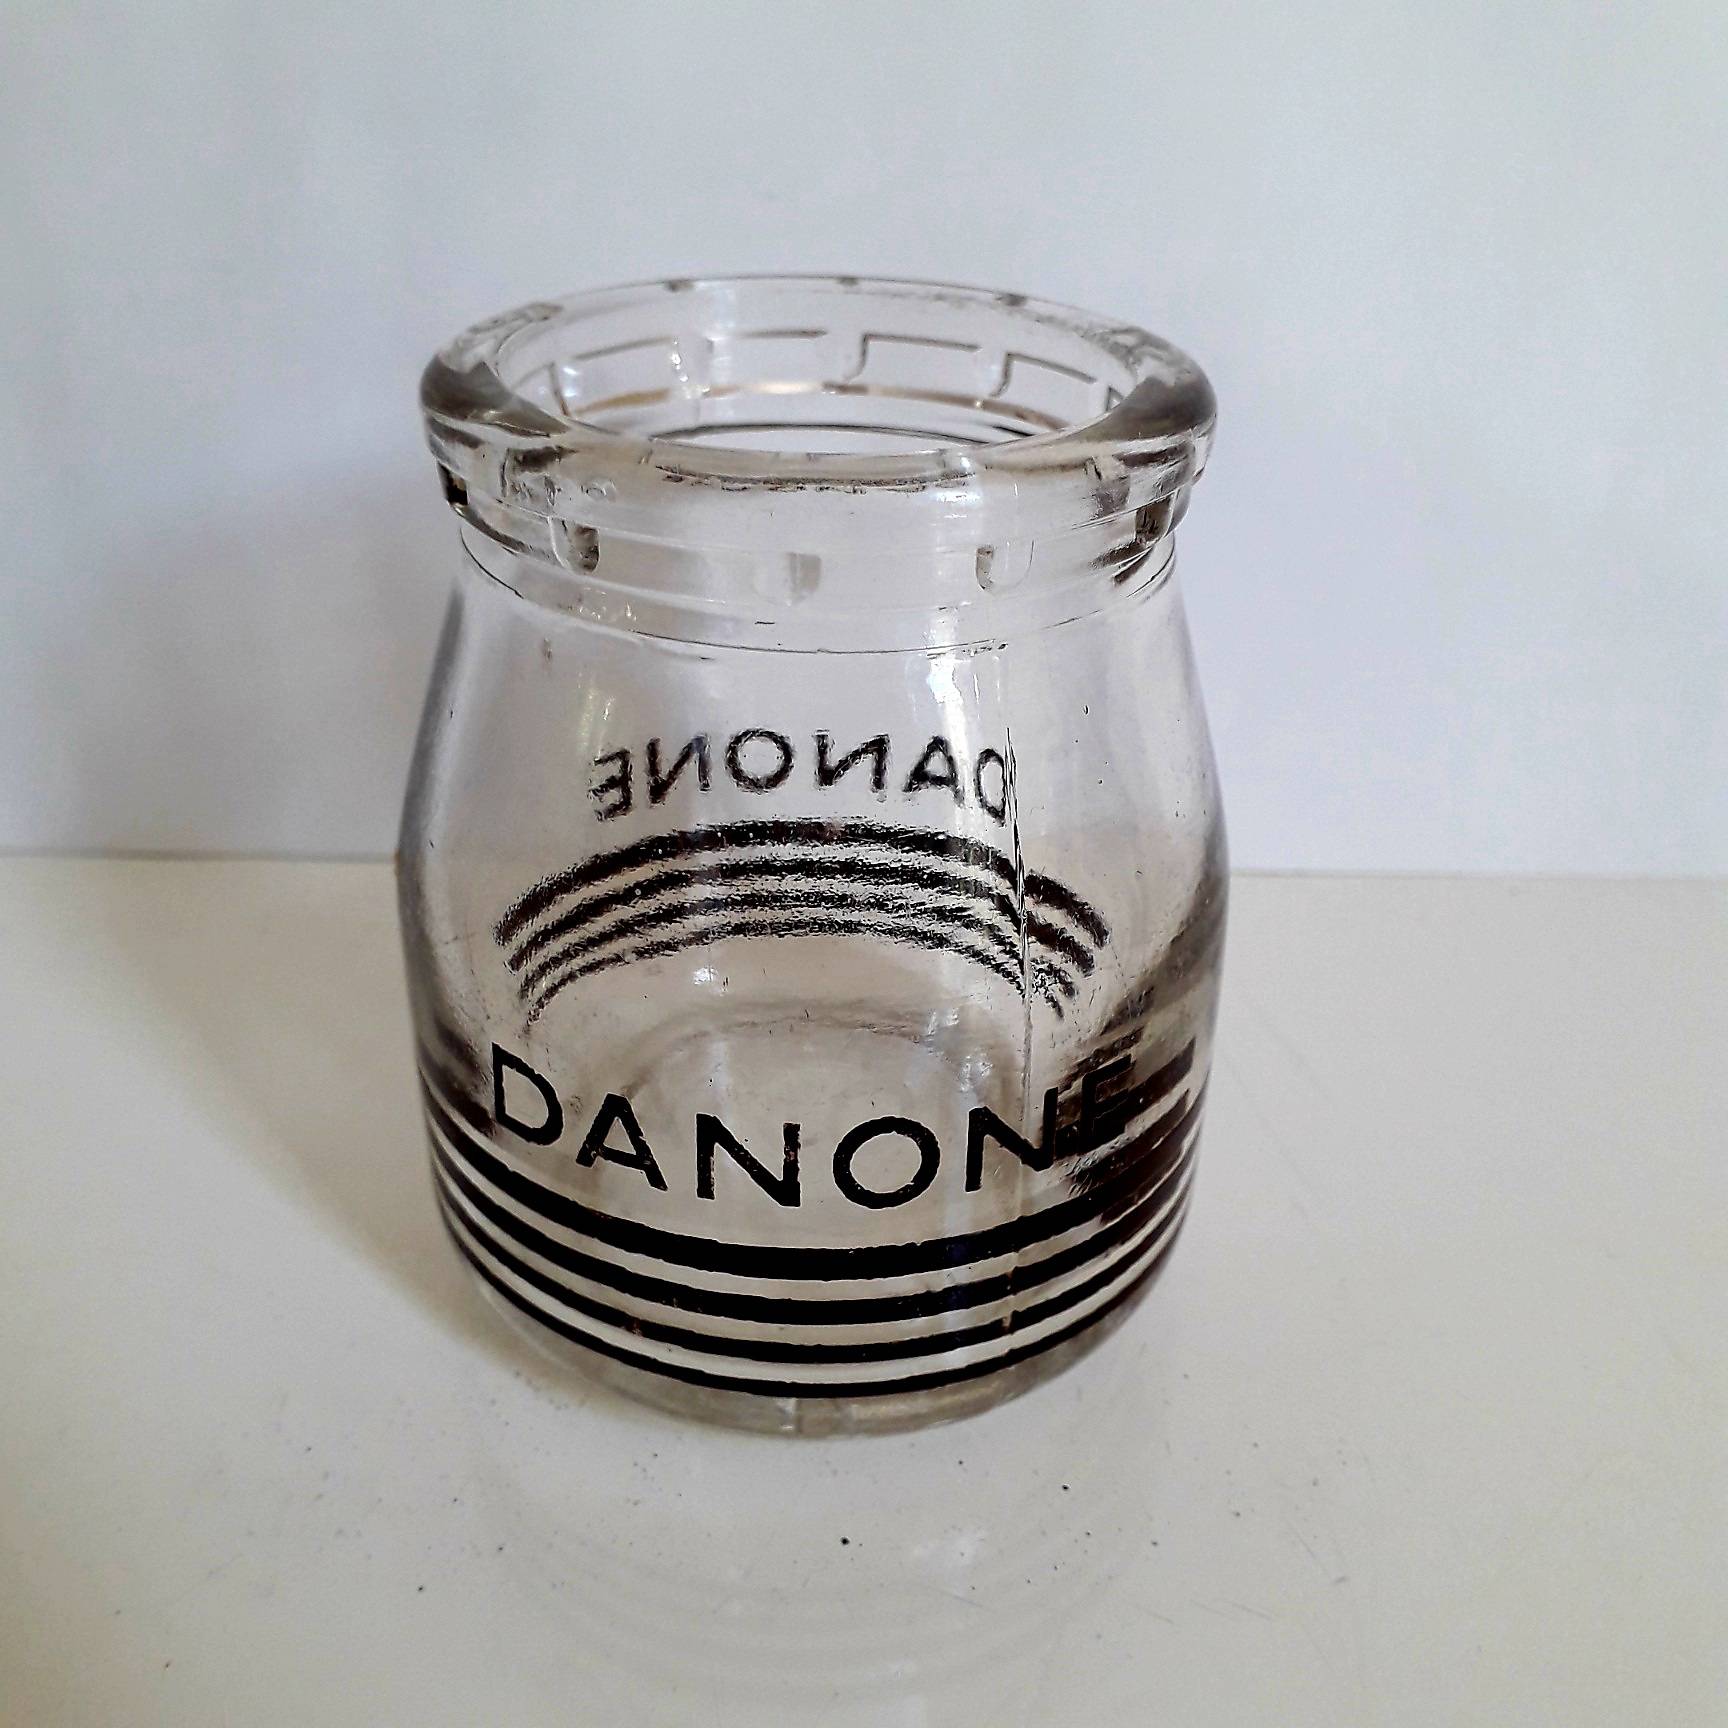 Ancien pot de yaourt en verre Danone, années 1950 - Début de Série